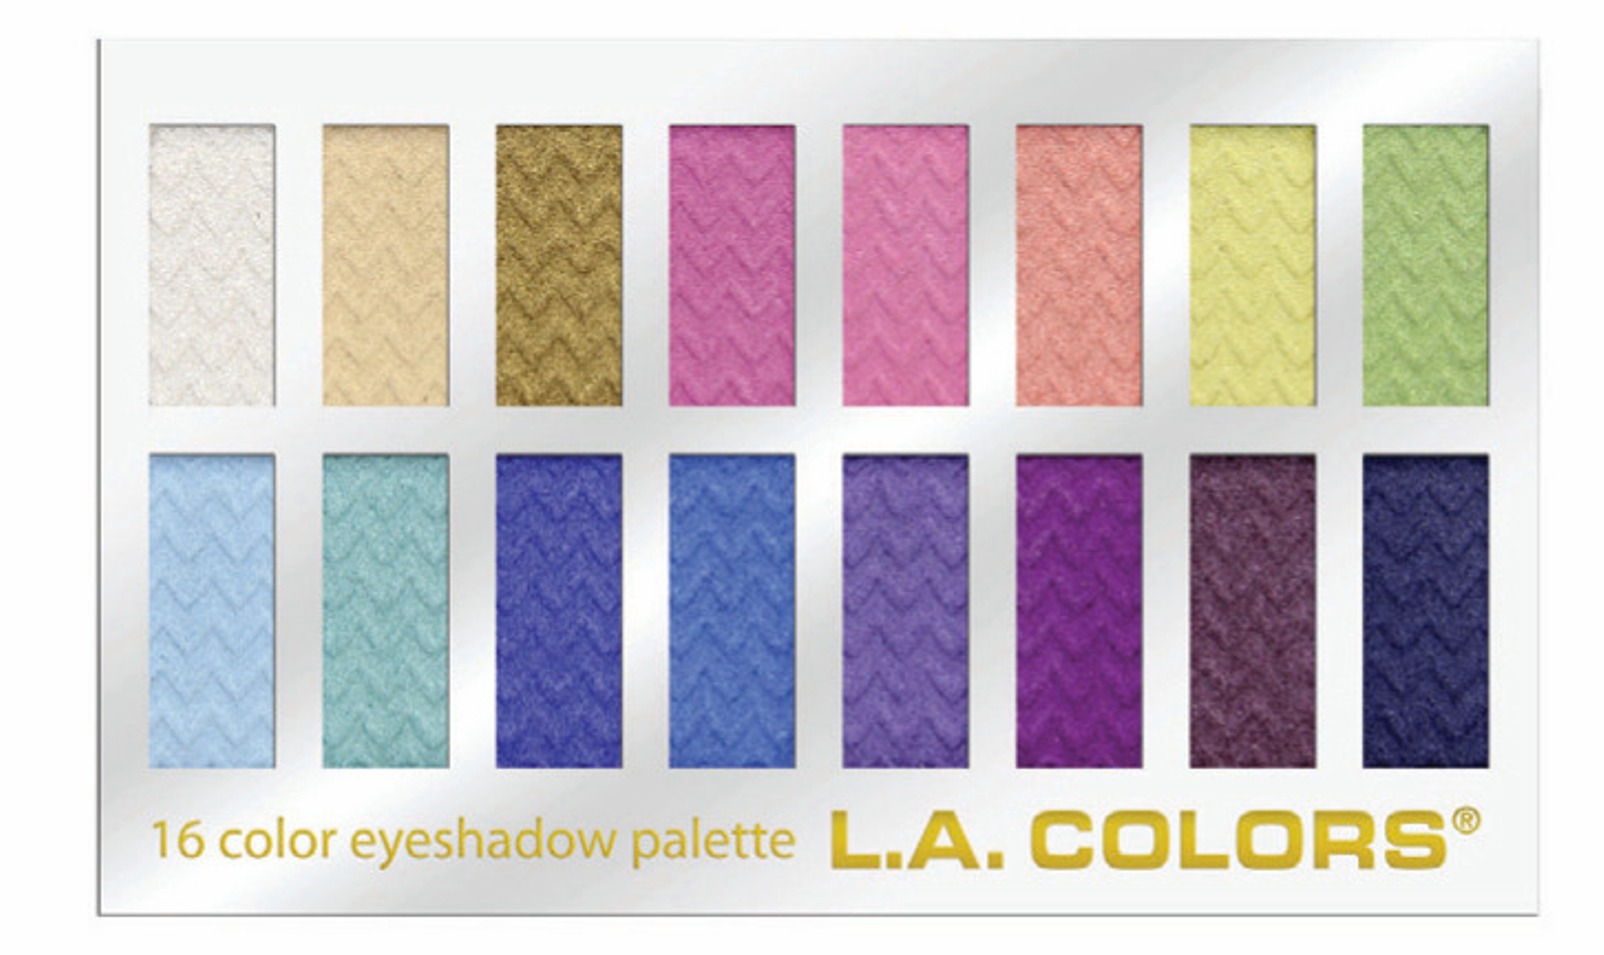 L.A. Colors 16 Color Eyeshadow Palette - Haute  0.95 fl oz  27 g